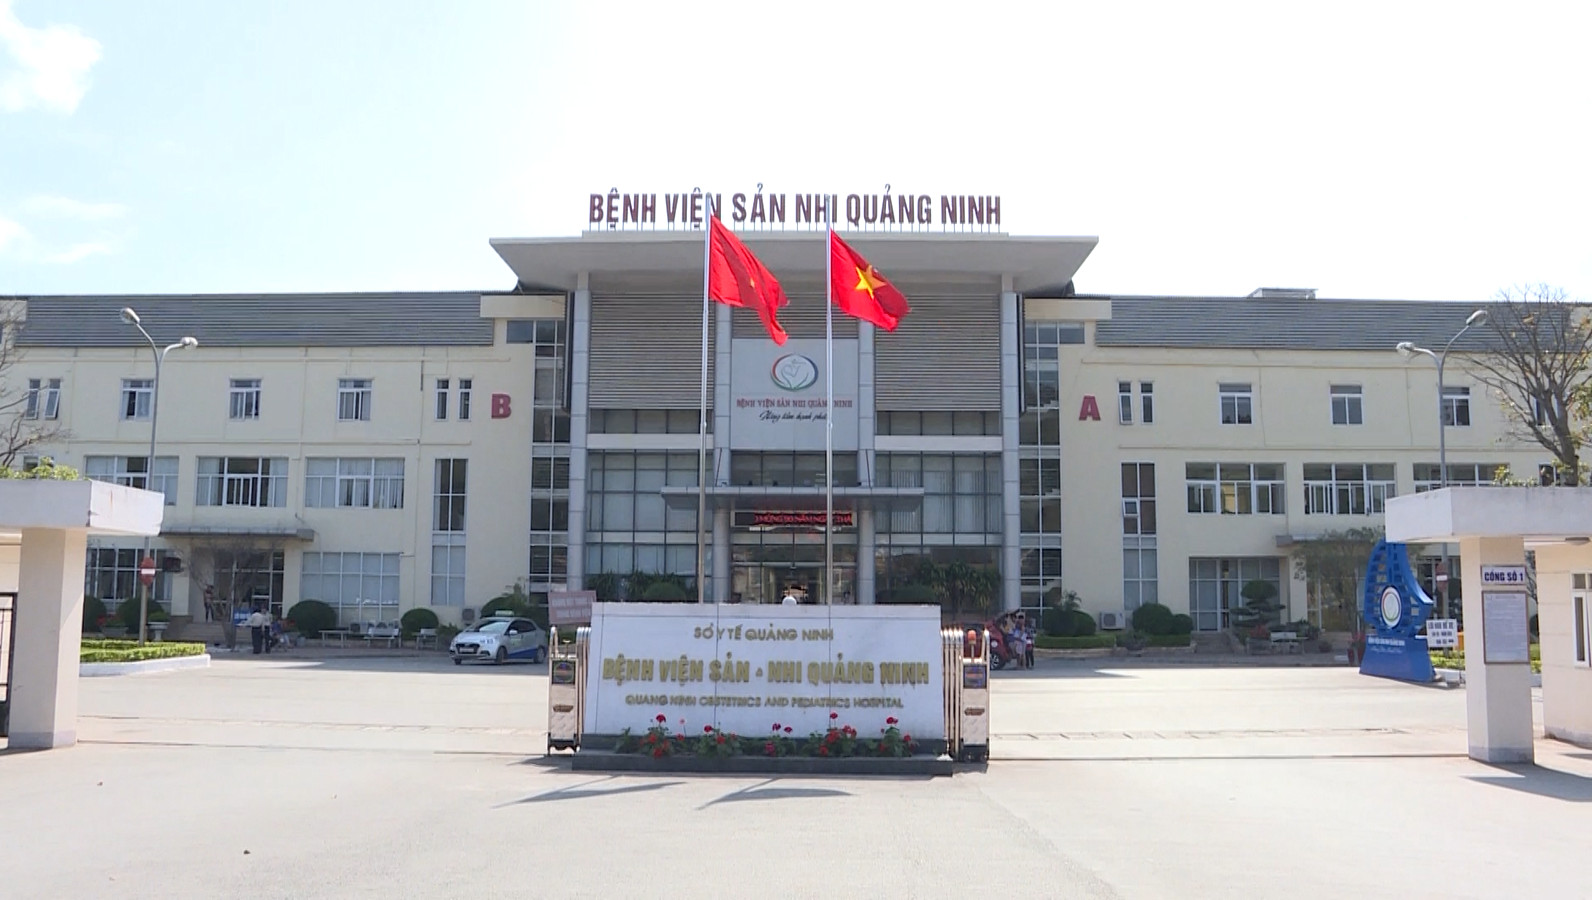 Mạo danh nhân viên Bệnh viện Sản Nhi Quảng Ninh để bán thực phẩm chức năng  - Ảnh 1.